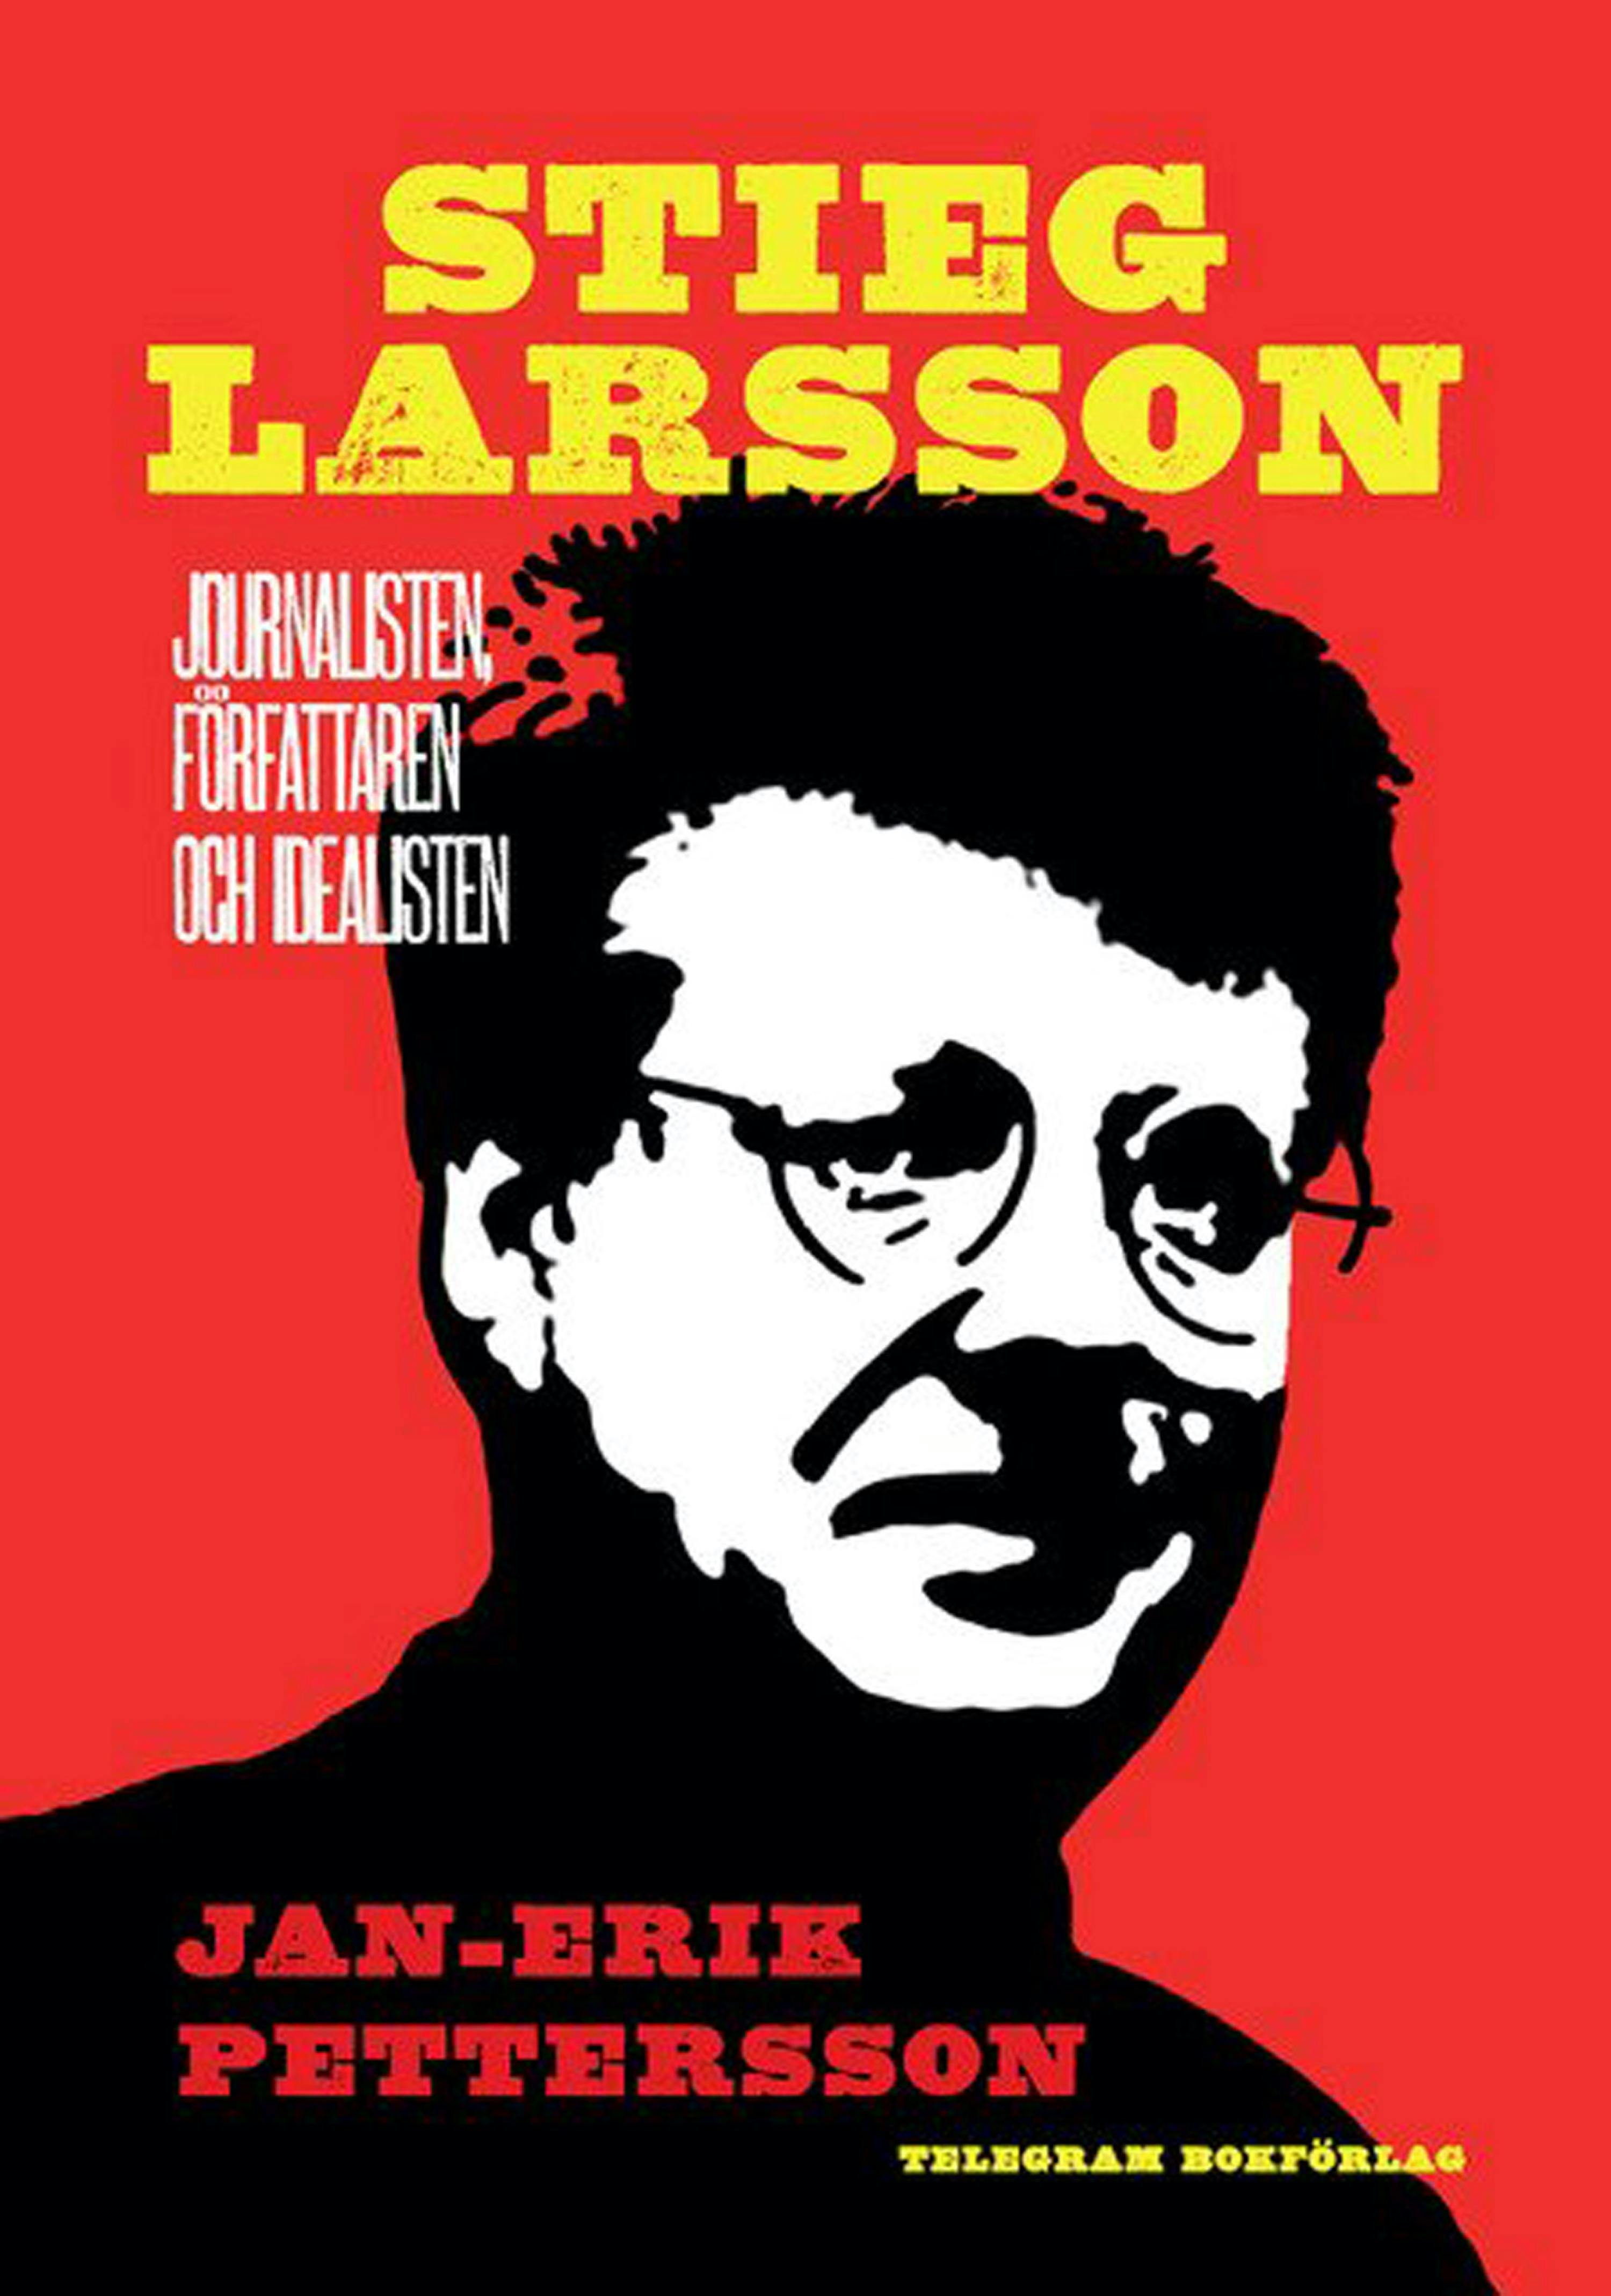 Stieg Larsson: Journalisten, författaren, idealisten - Jan-Erik Pettersson